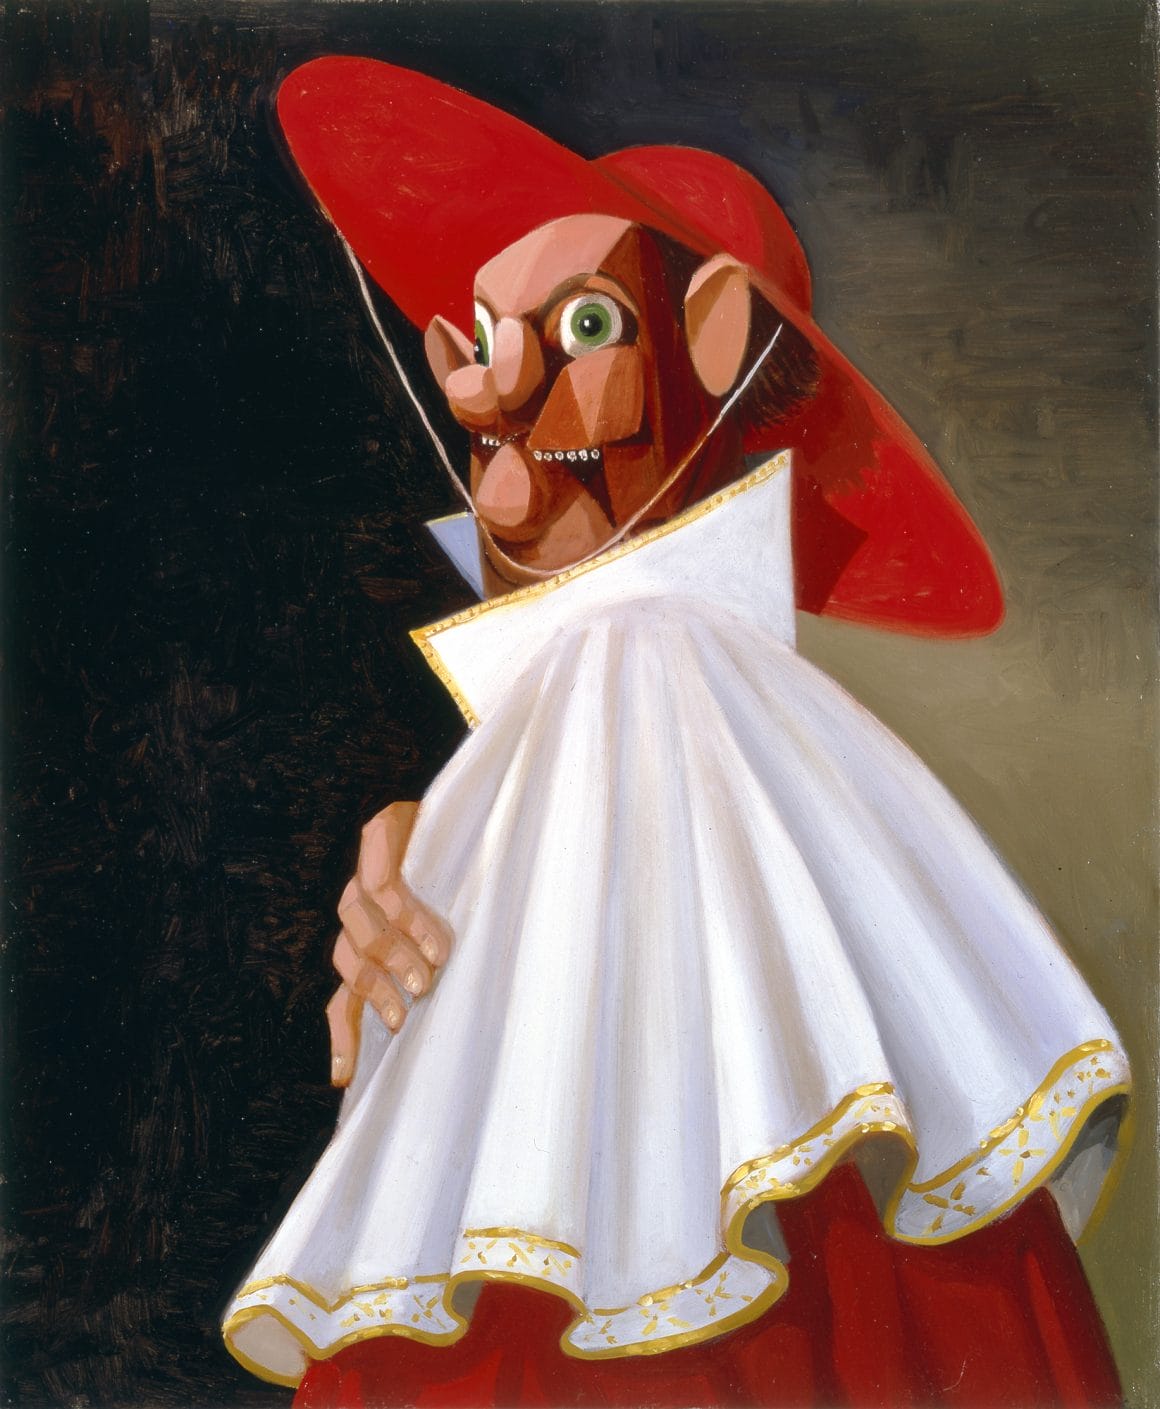 Portrait réalisé par le peintre américain George Condo